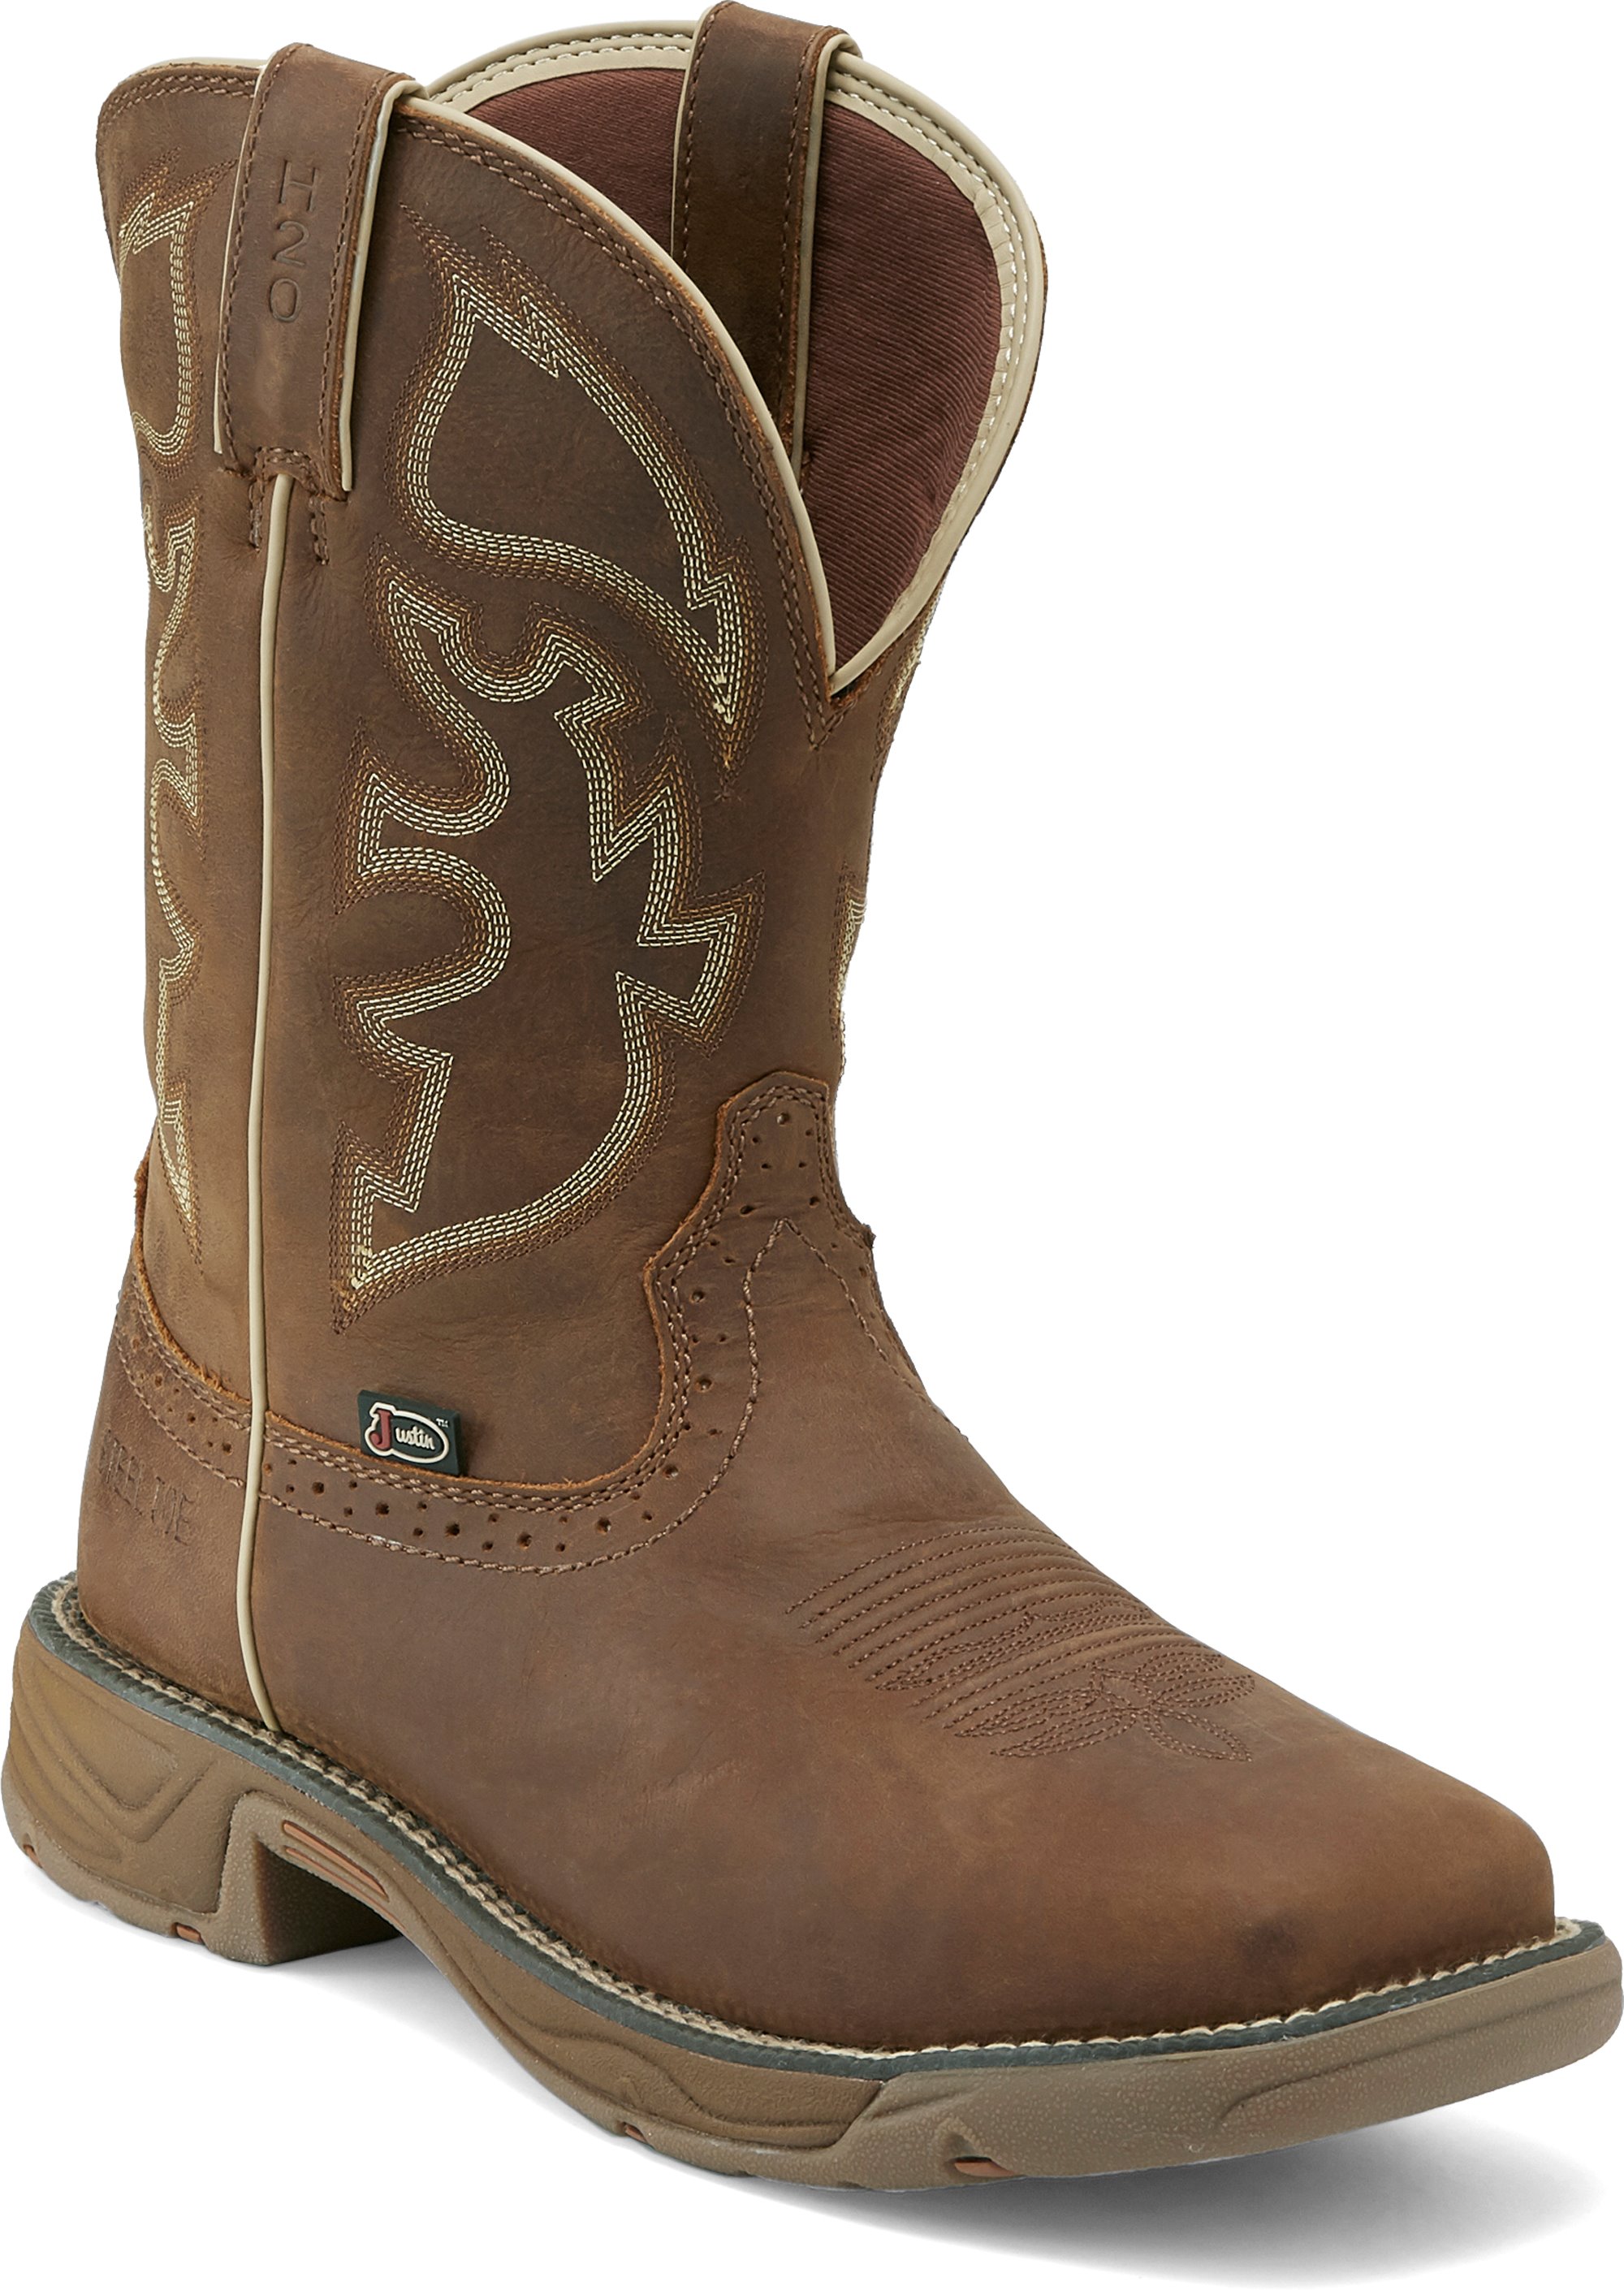 women wearing cowboy boots